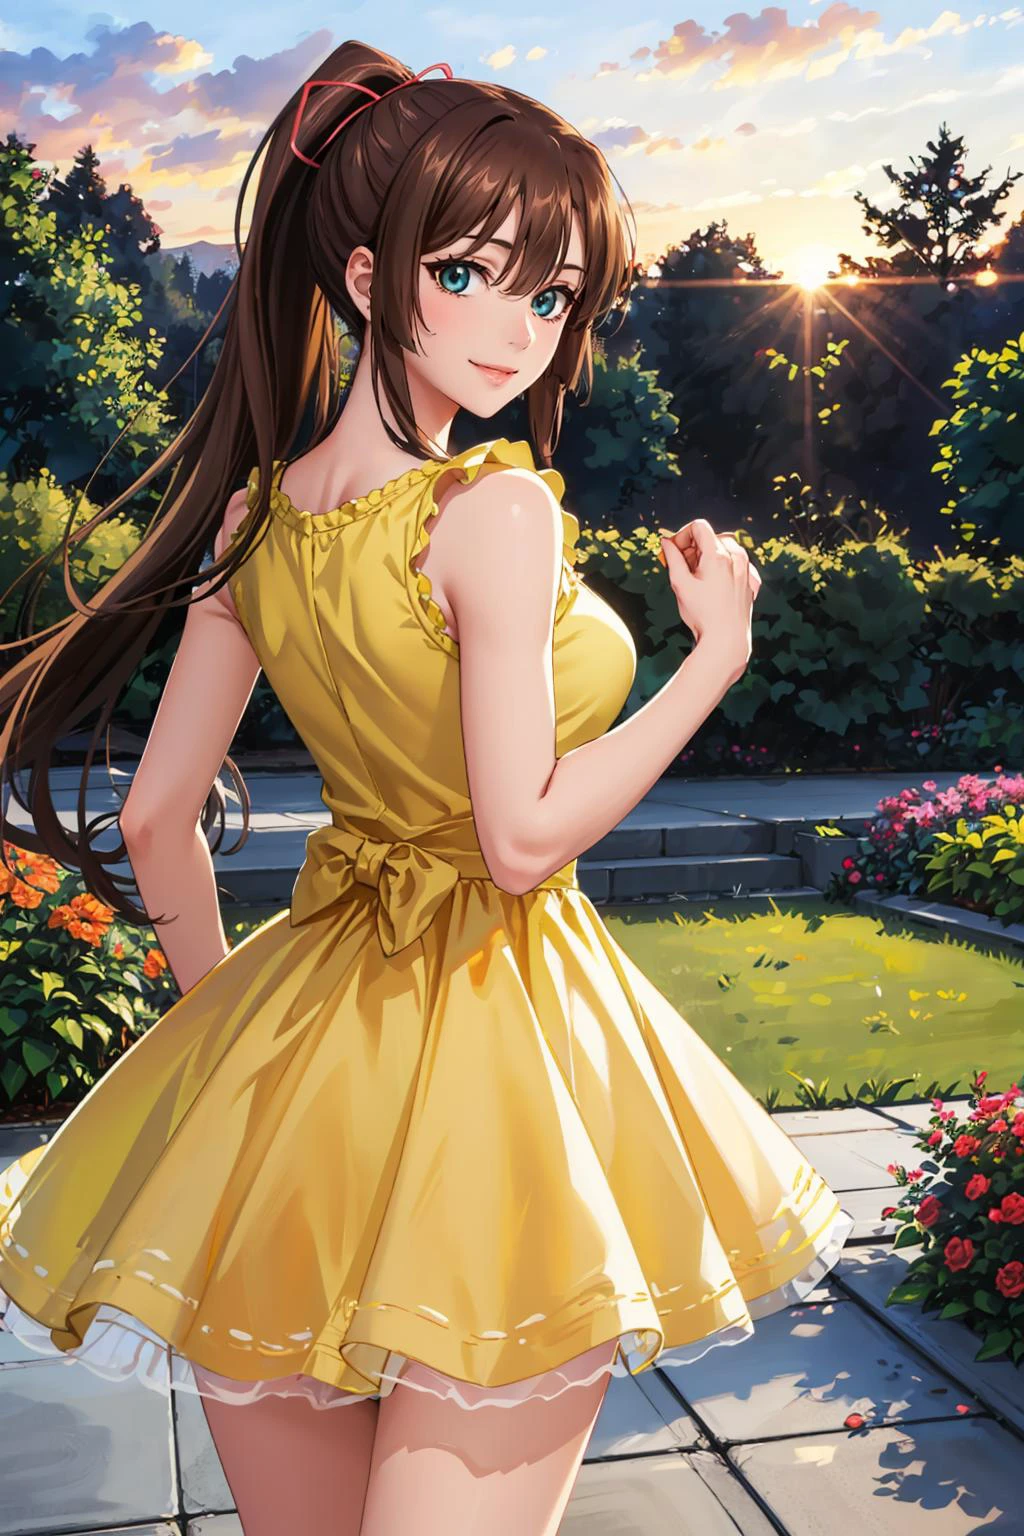 chef-d&#39;œuvre, meilleure qualité, Kirasaka Sayaka, queue de cheval, ruban à cheveux, robe d&#39;été jaune, par derrière, jardin, coucher de soleil, regarder le spectateur, sourire énervéYSD,woman wearing a robe d&#39;été jaune